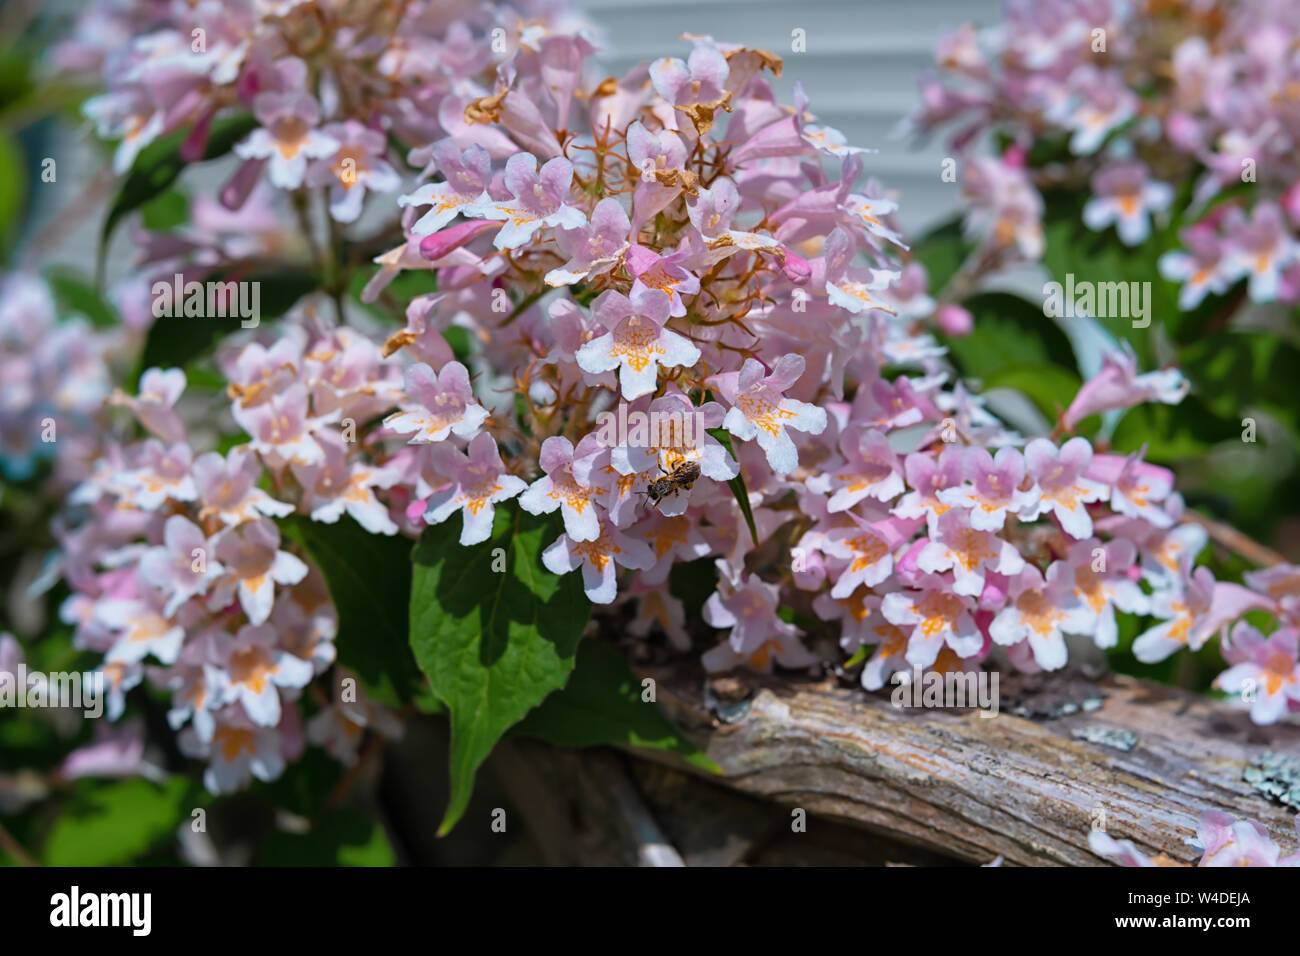 Close up dettaglio dei fiori del vecchio arbusto la bellezza bush o Linnaea amabilis e talvolta noto come Kolkwitzia amabilis. Foto Stock